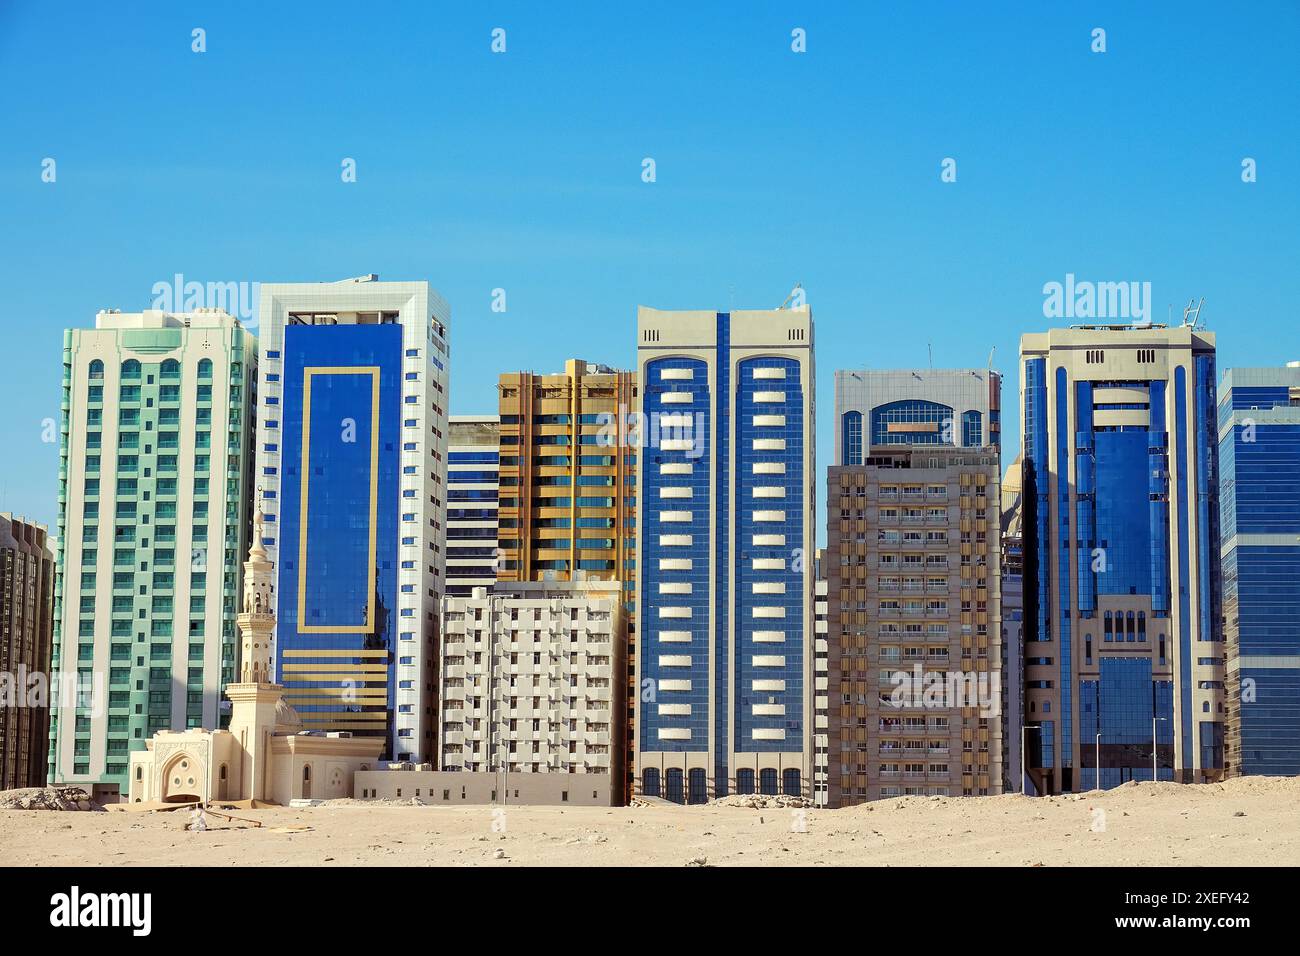 Eine moderne neue Stadt erhebt sich direkt aus dem Wüstensand, Satellitenentwicklungen. Abu Dhabi. - Zivilisationsoase und urbanisiertes Umweltkonzept Stockfoto